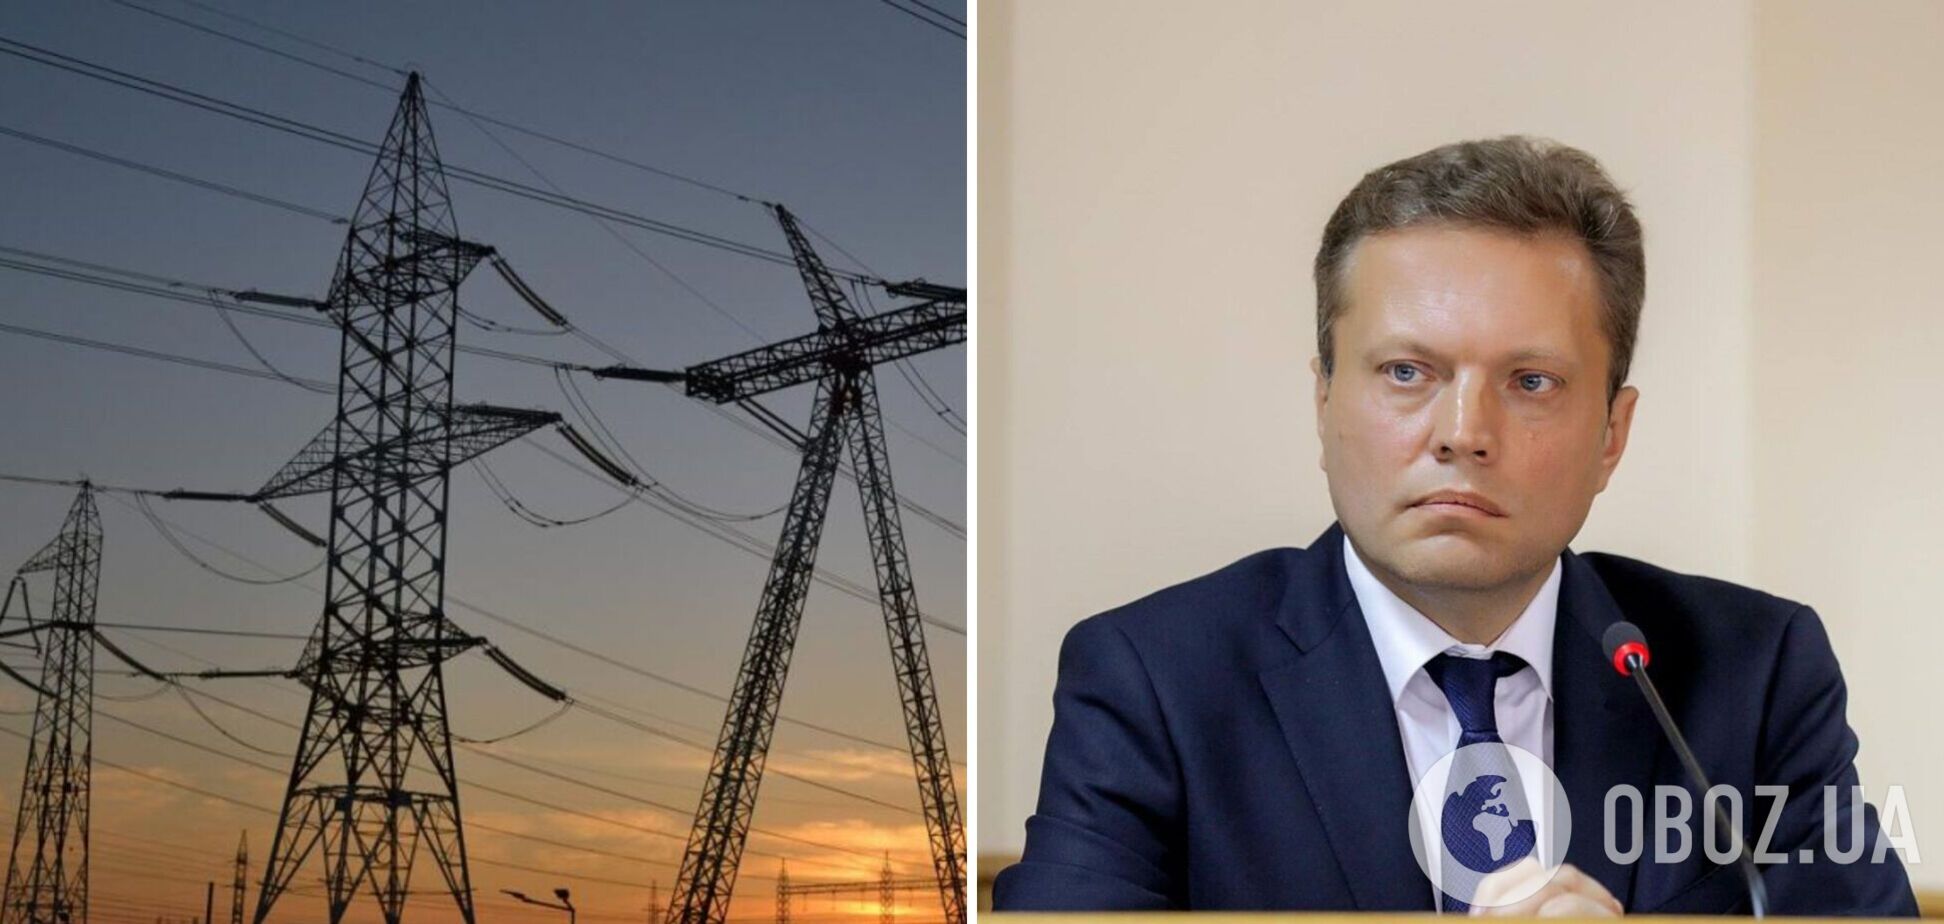 Ринок електроенергії знайшов баланс після зміни прайс-кепів, – Омельченко